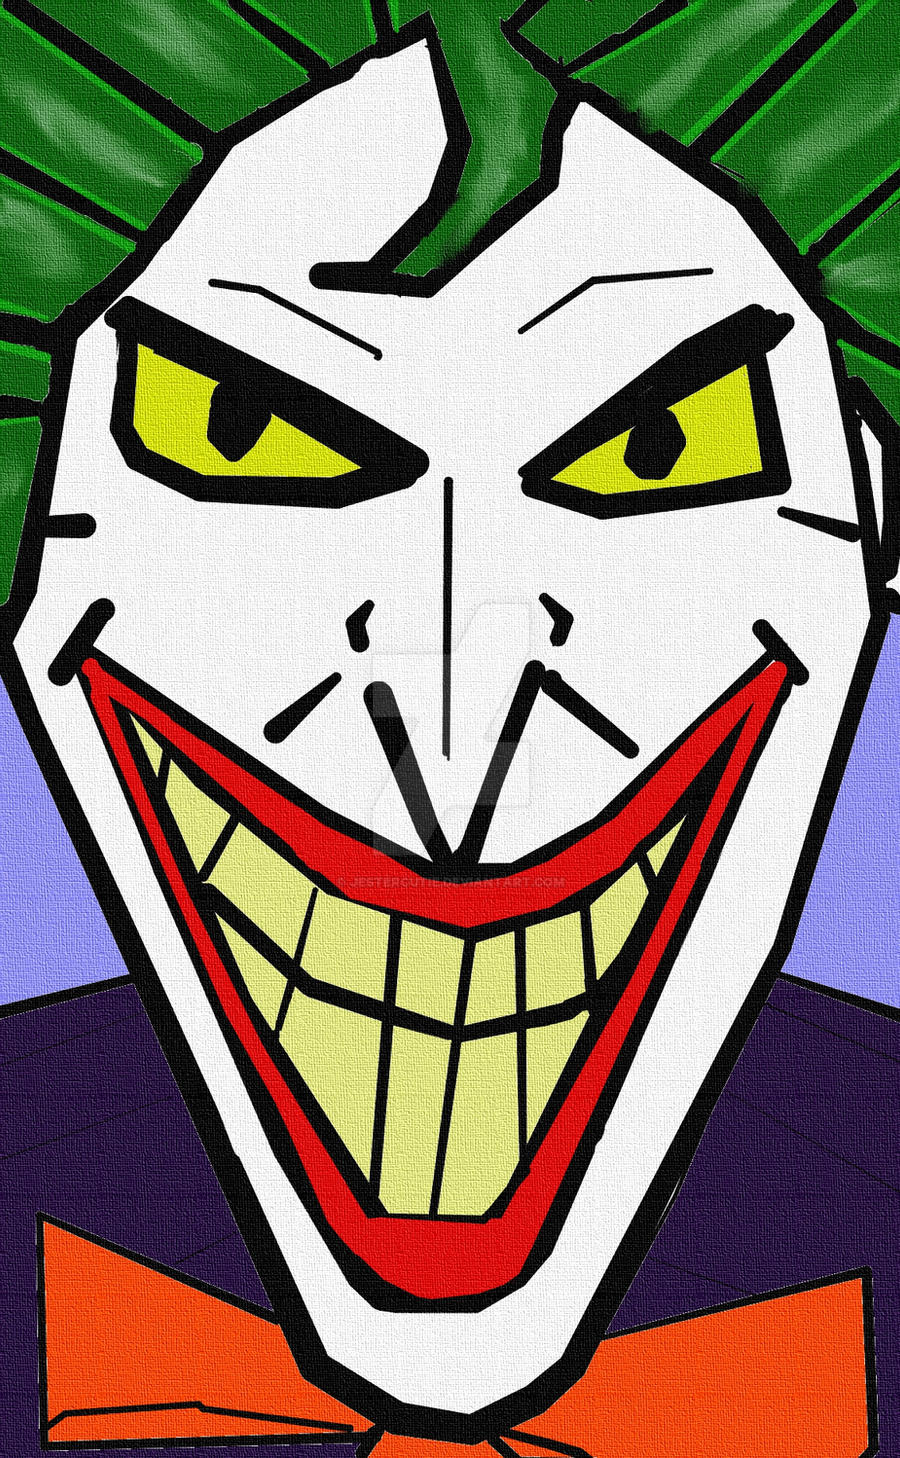 Joker Stare by JesterCutie on DeviantArt